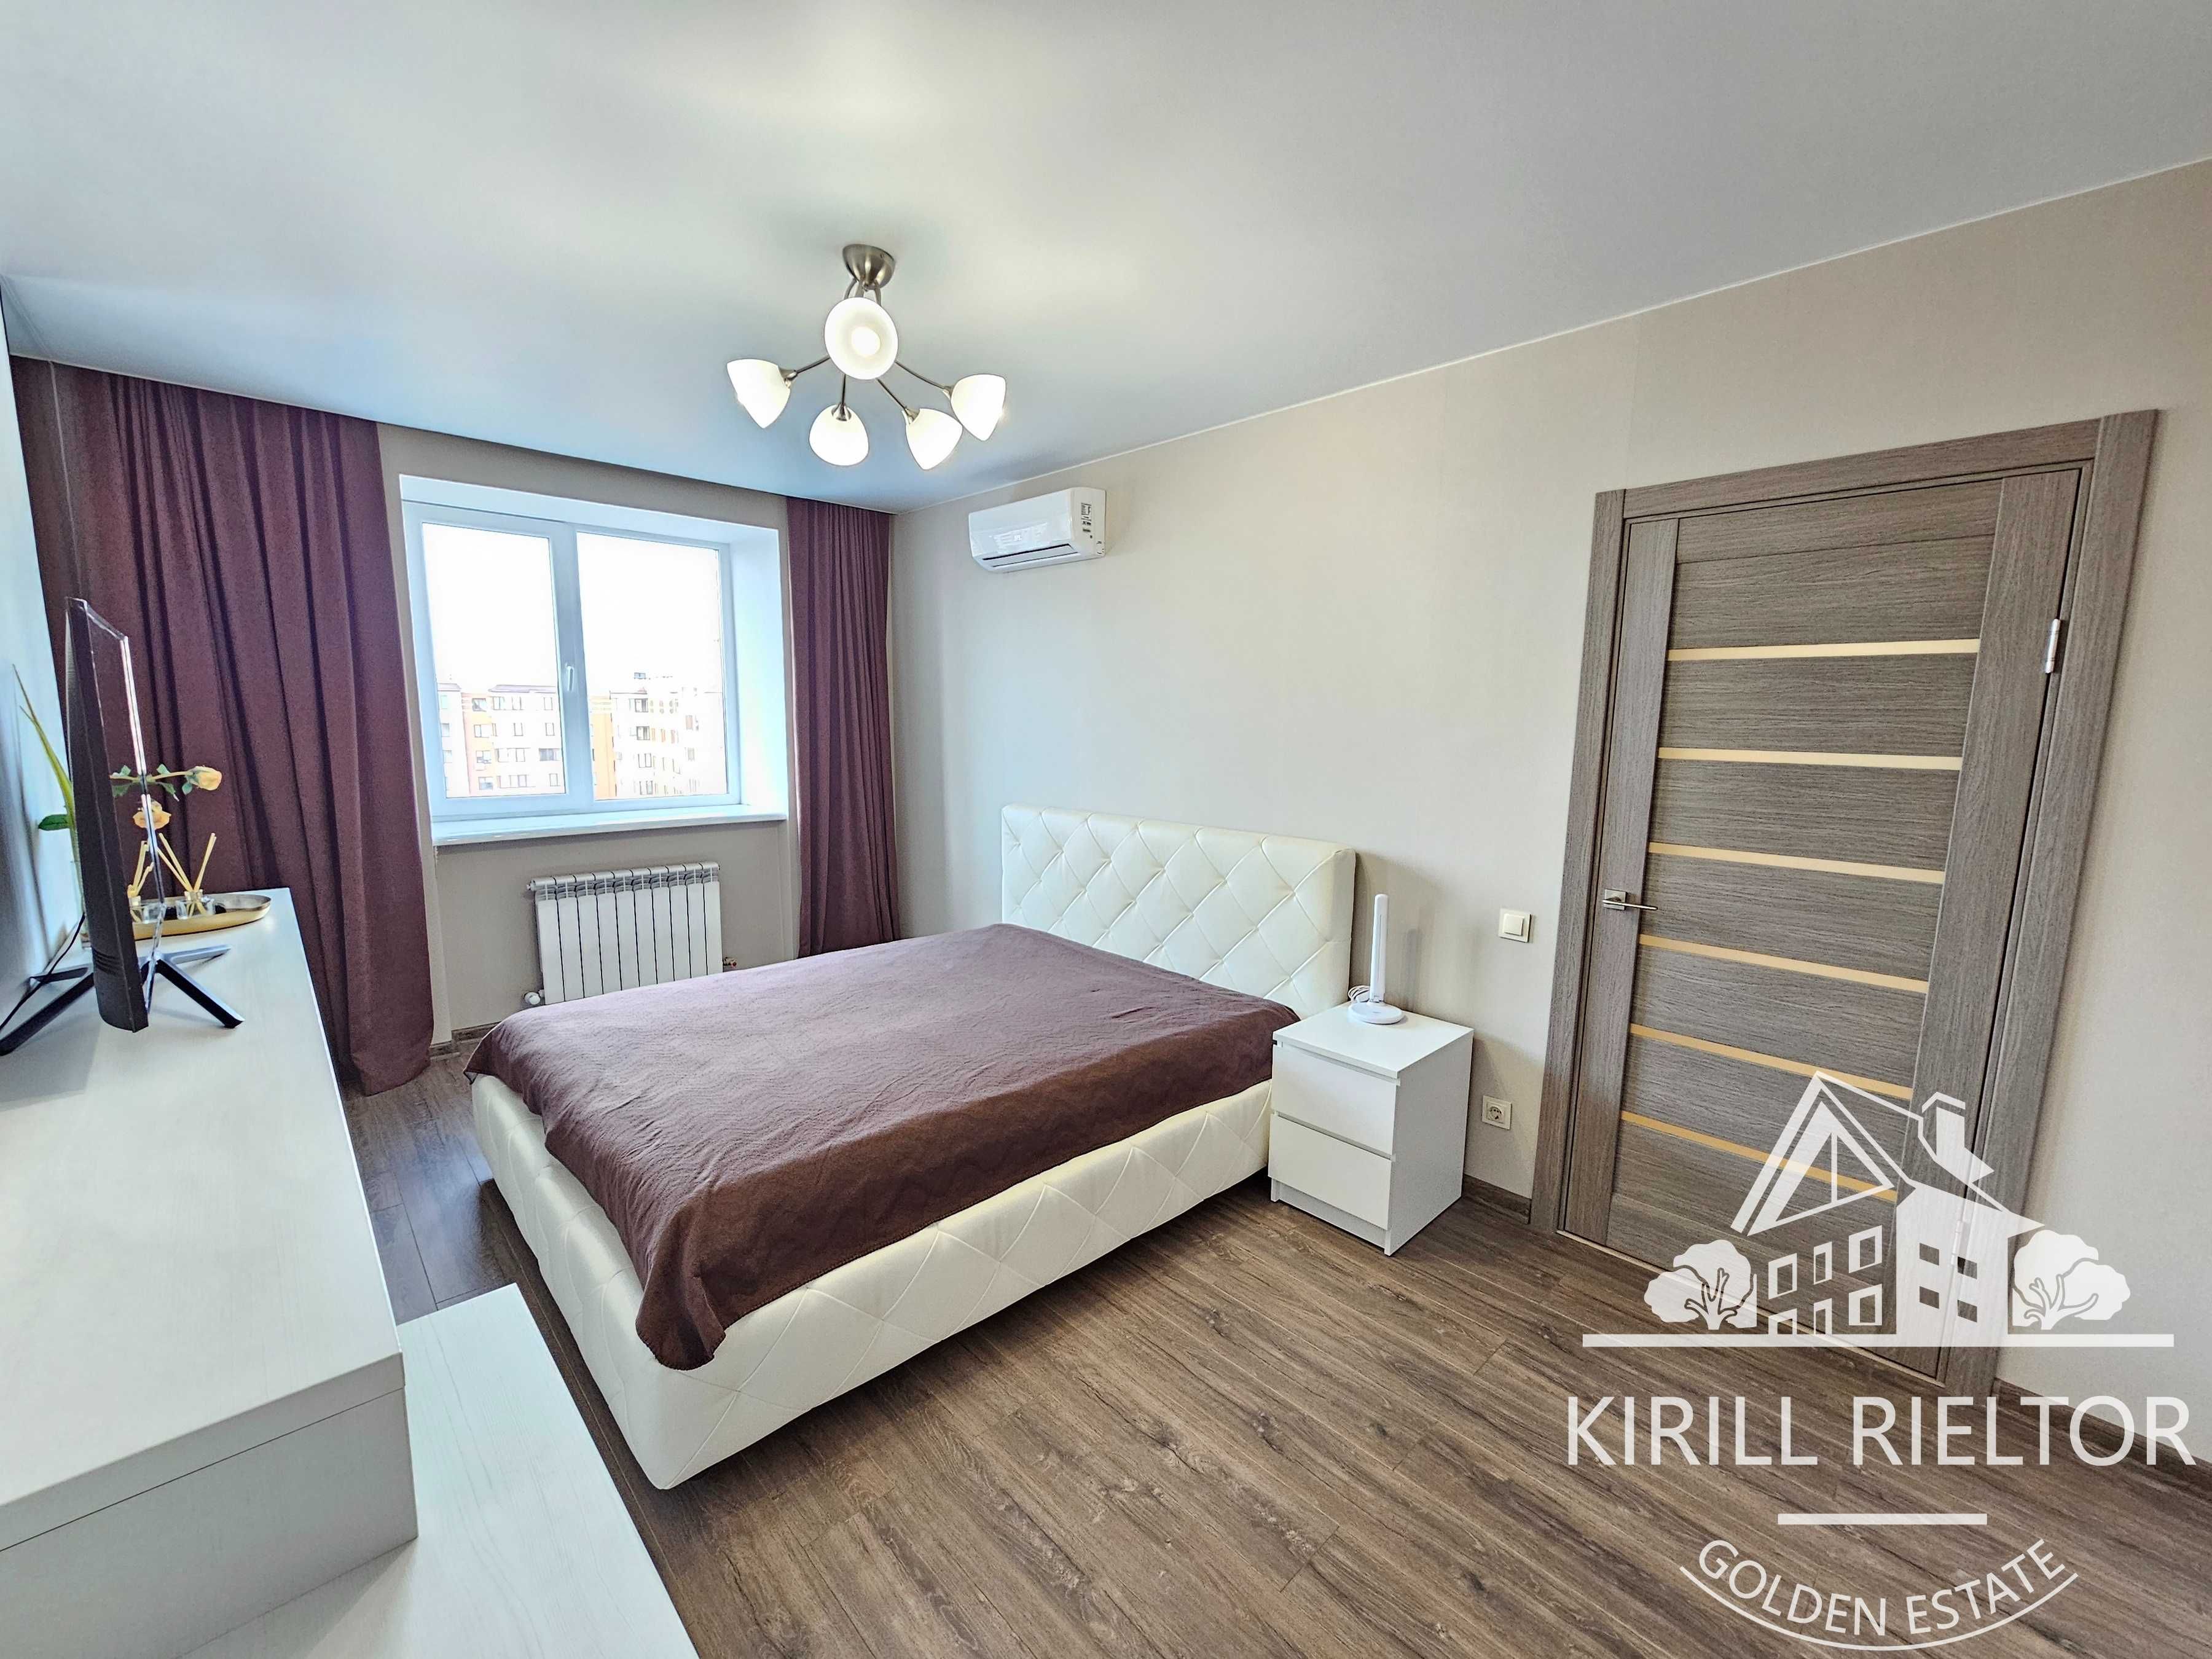 Продается 2-х комнатная квартира с ремонтом в жк "Днепровская Брама"